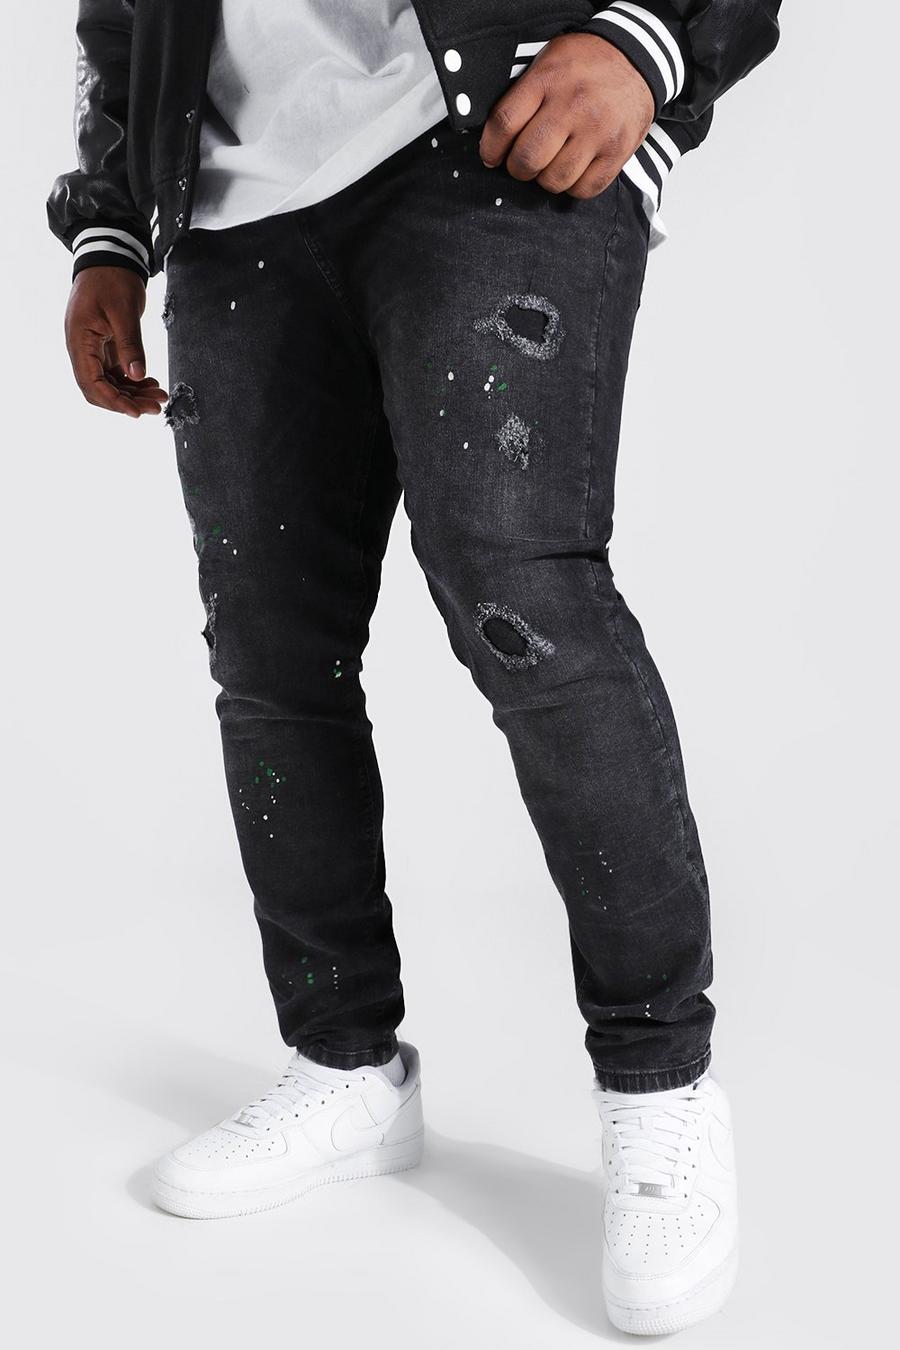 שחור דהוי סופר סקיני ג'ינס עם כתמי צבע למידות גדולות